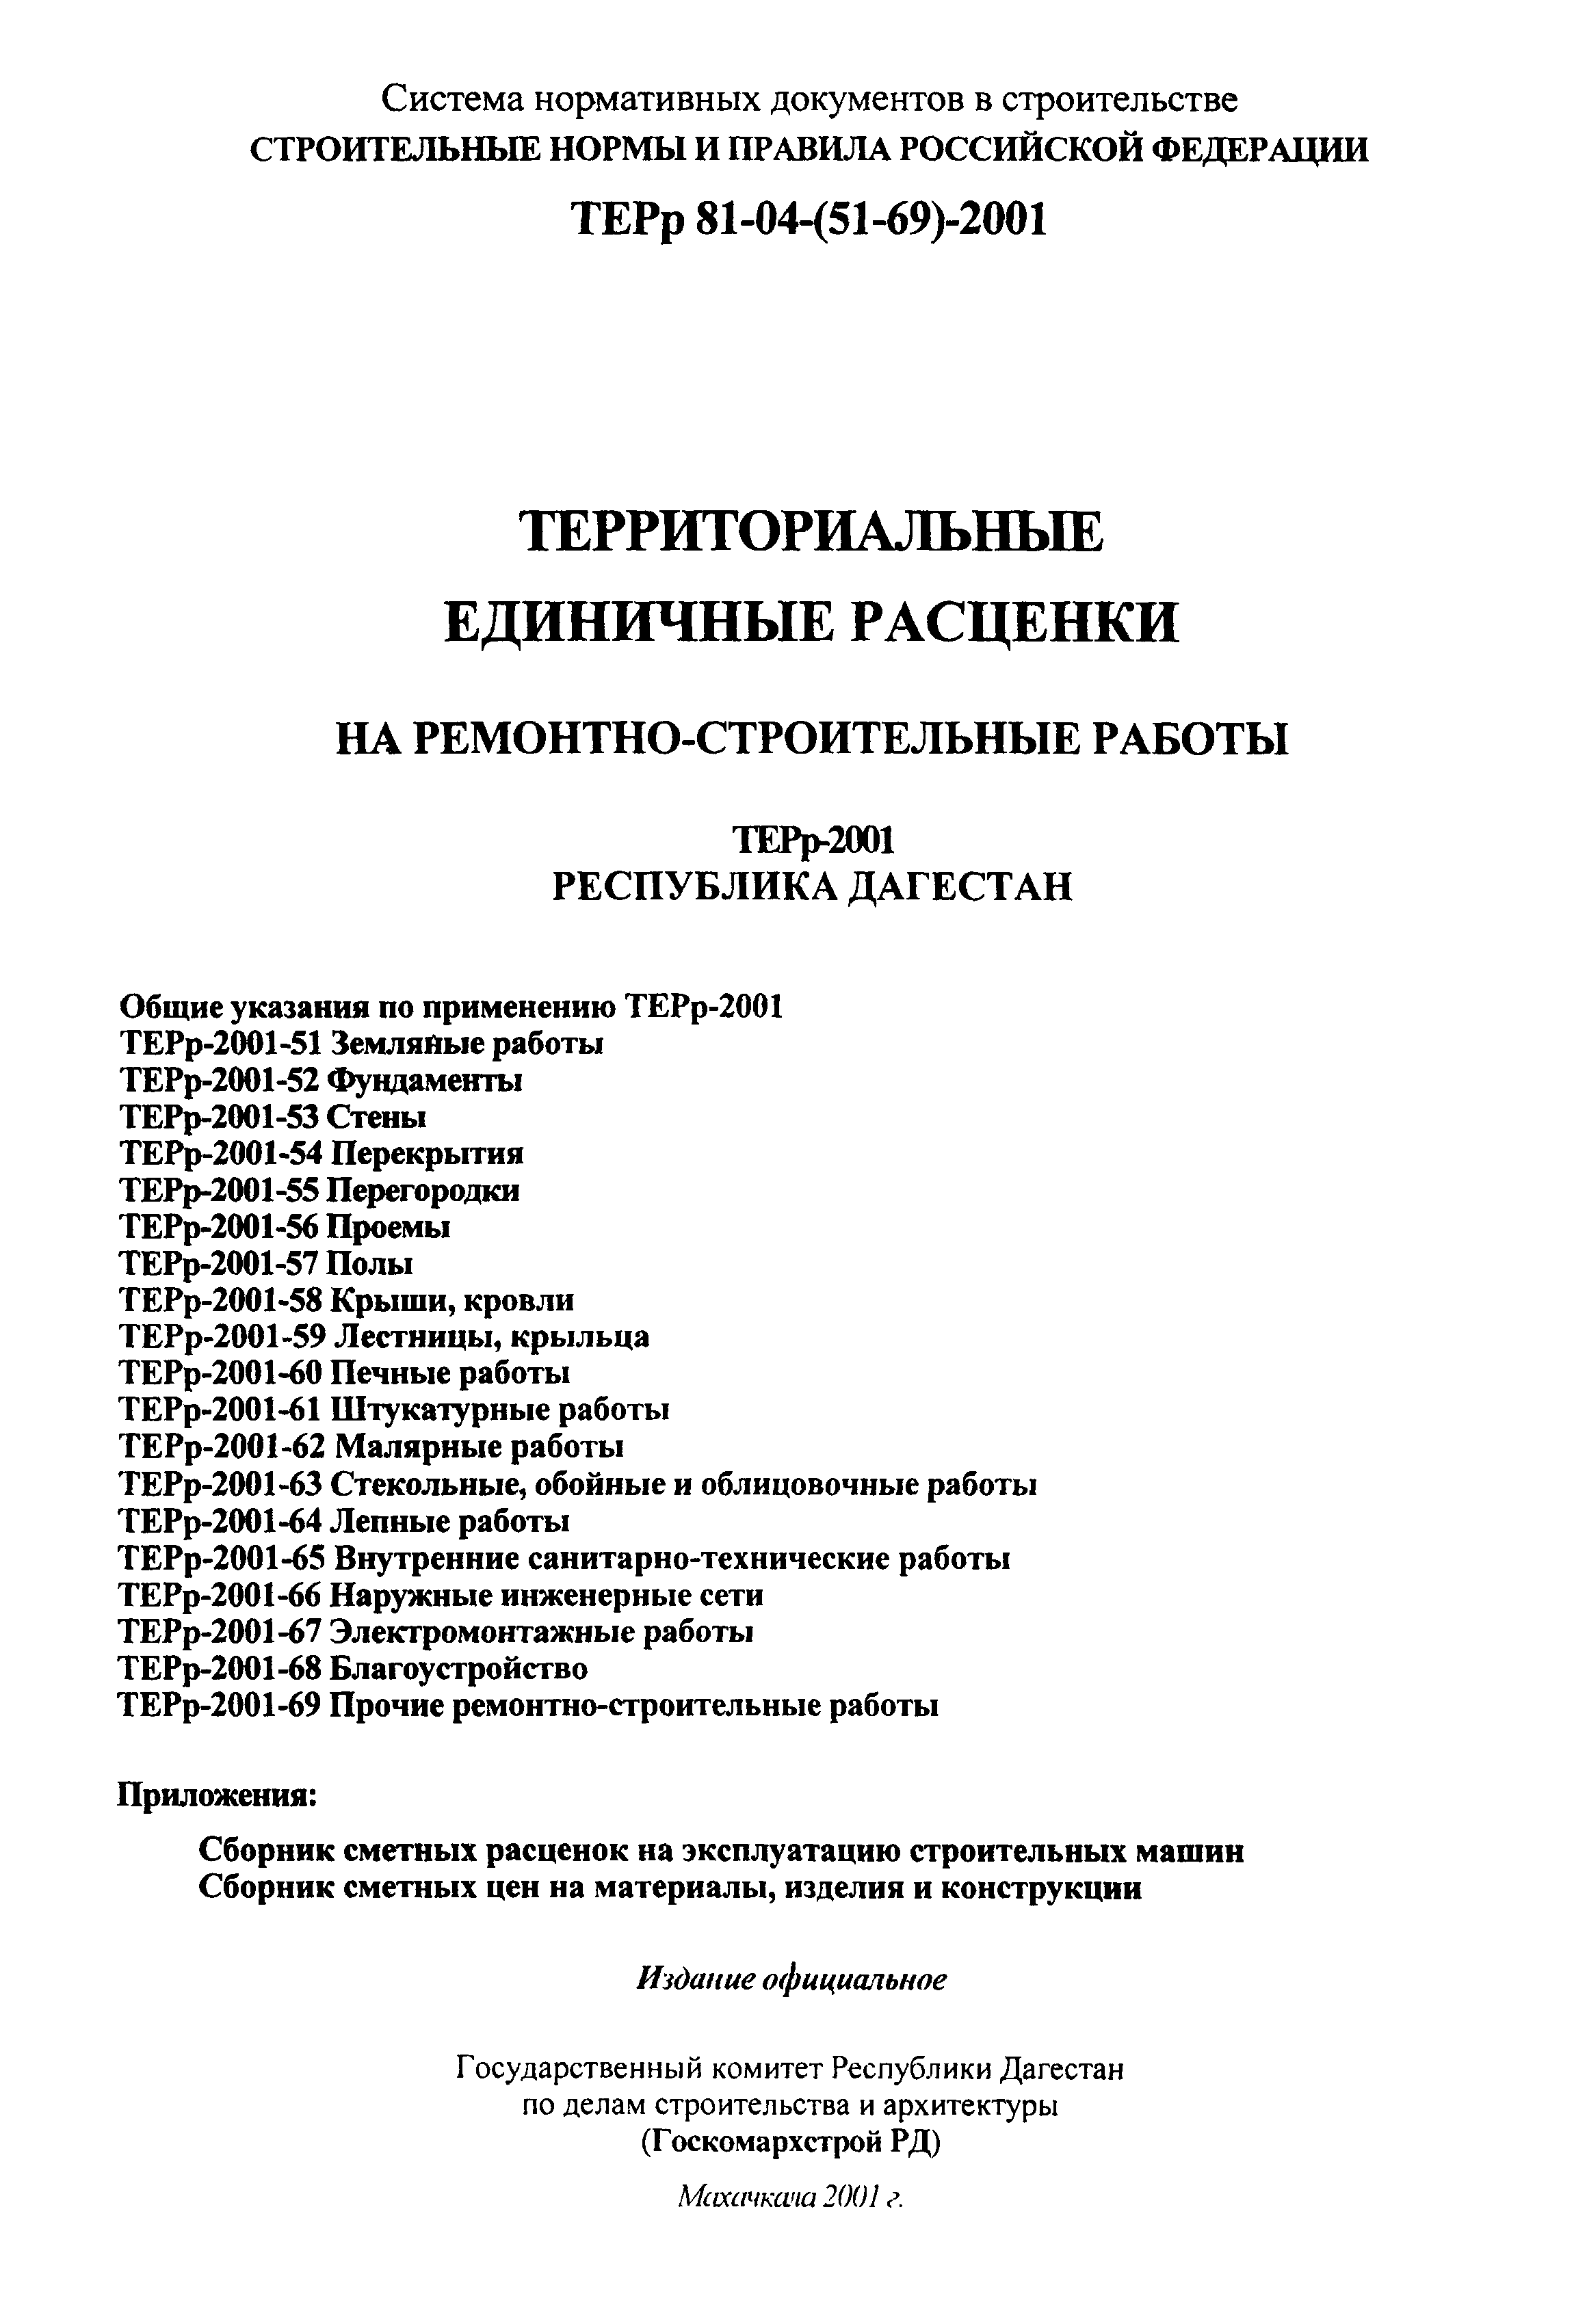 ТЕРр Республика Дагестан 2001-59